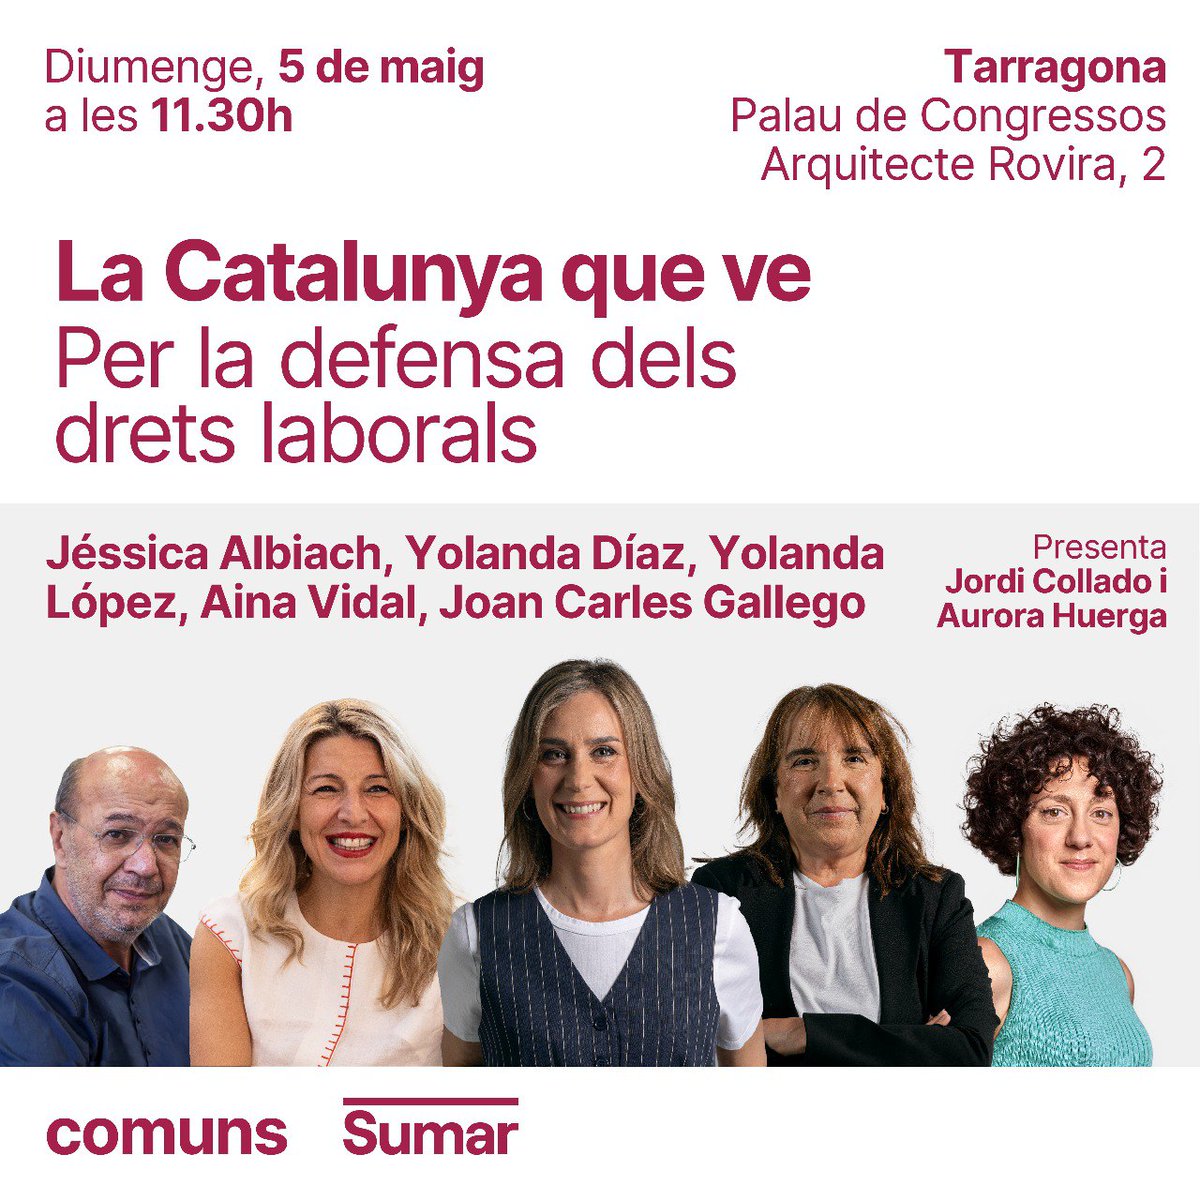 ✊🏻 Aquest 12M ens hi juguem molt! 💥 És hora de lluitar per la Catalunya que ve! T'esperem demà a Tarragona! Vine a debatre sobre la defensa dels drets laborals amb @Yolanda_Diaz_, @jessicaalbiach, @AinaVS, @Yolanda_Lofer_ i joancgallego ⏰ 11:30 📍Palau de Congressos